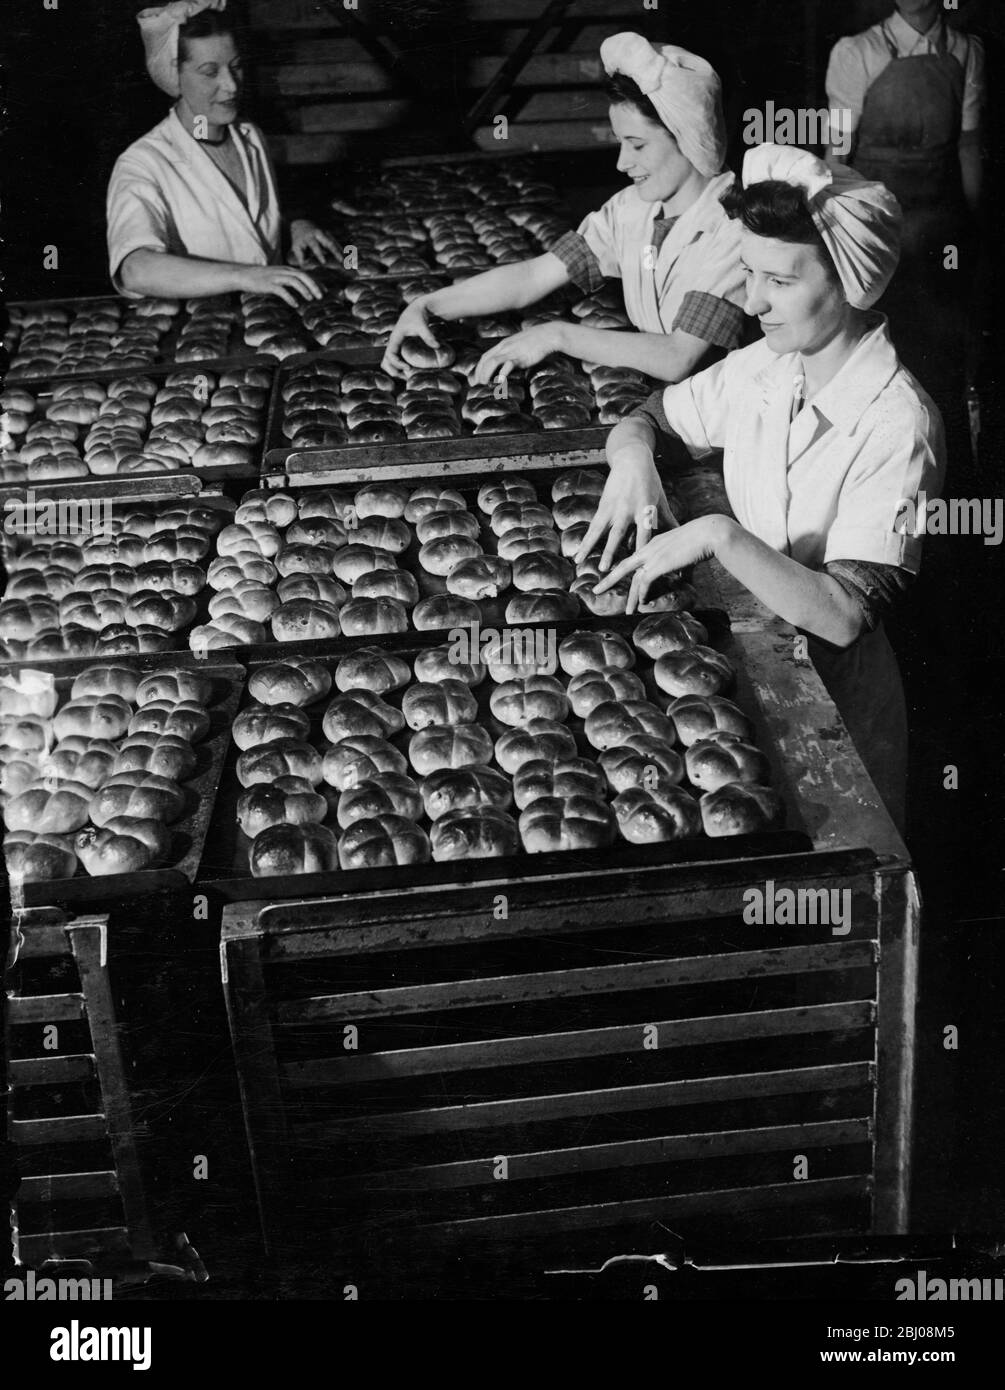 Des jeunes filles dans les boulangeries de Cadby Hall de J Lyons et co, se préparent à envoyer une partie de l'énorme nombre de petits pains chauds de croix cuits le bon vendredi. En cette année de rationnement de pain, ils sont des petits pains de croix chauds pour la première fois. - 3 avril 1947 Banque D'Images